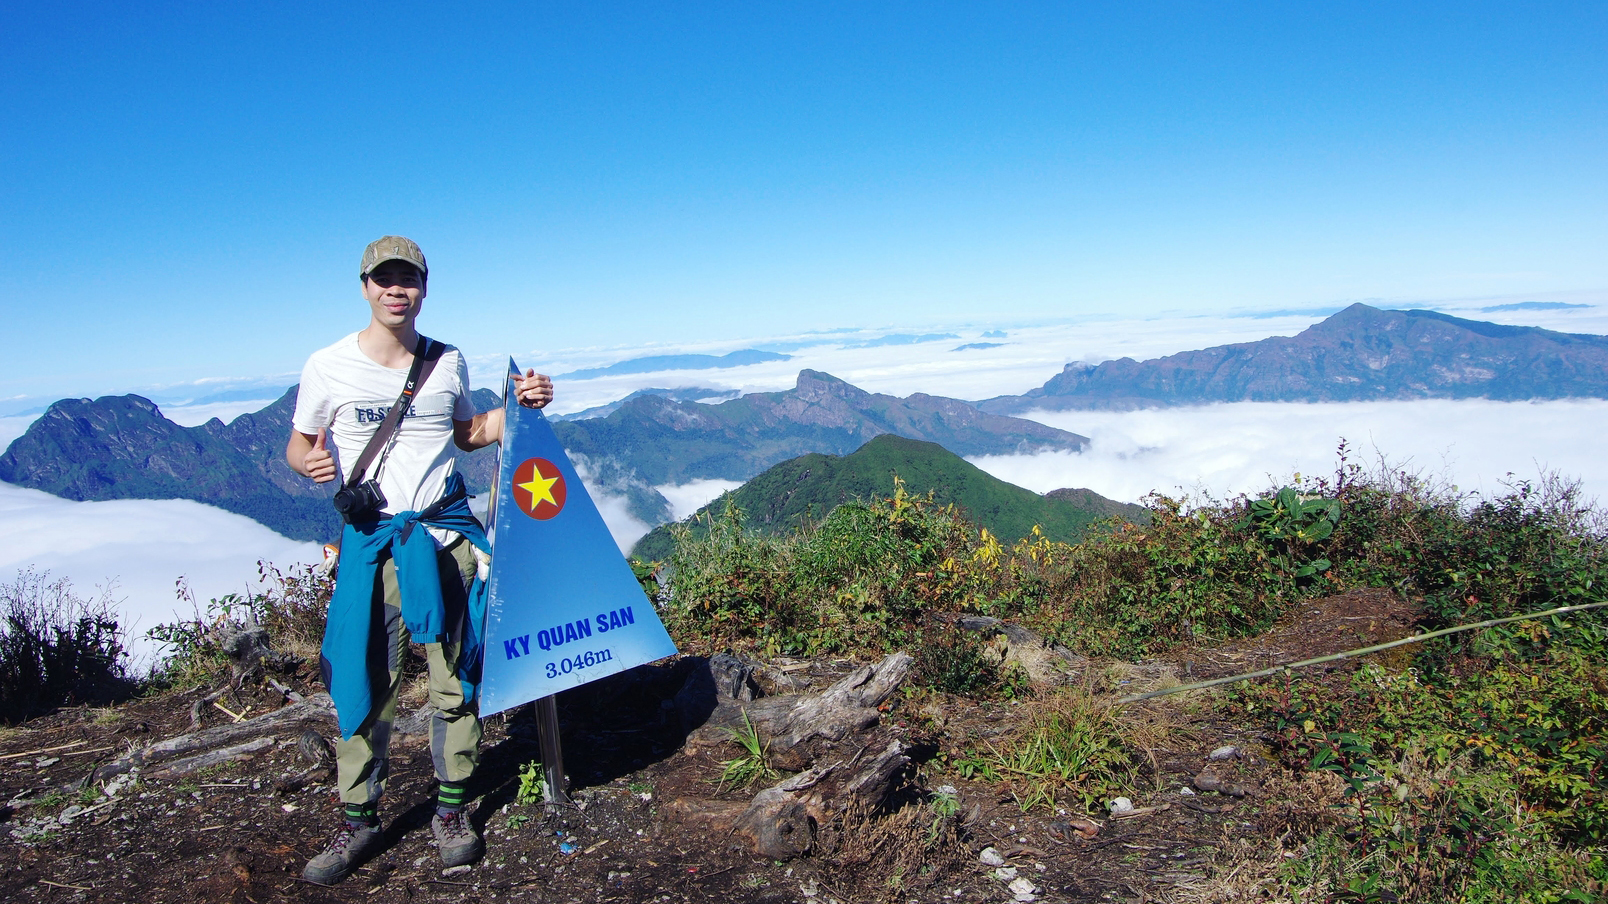 Phát hiện điểm leo núi có cái tên đặc biệt cách Hà Nội hơn 400km, du khách nhận xét “không phải ai cũng đi được” - Ảnh 8.